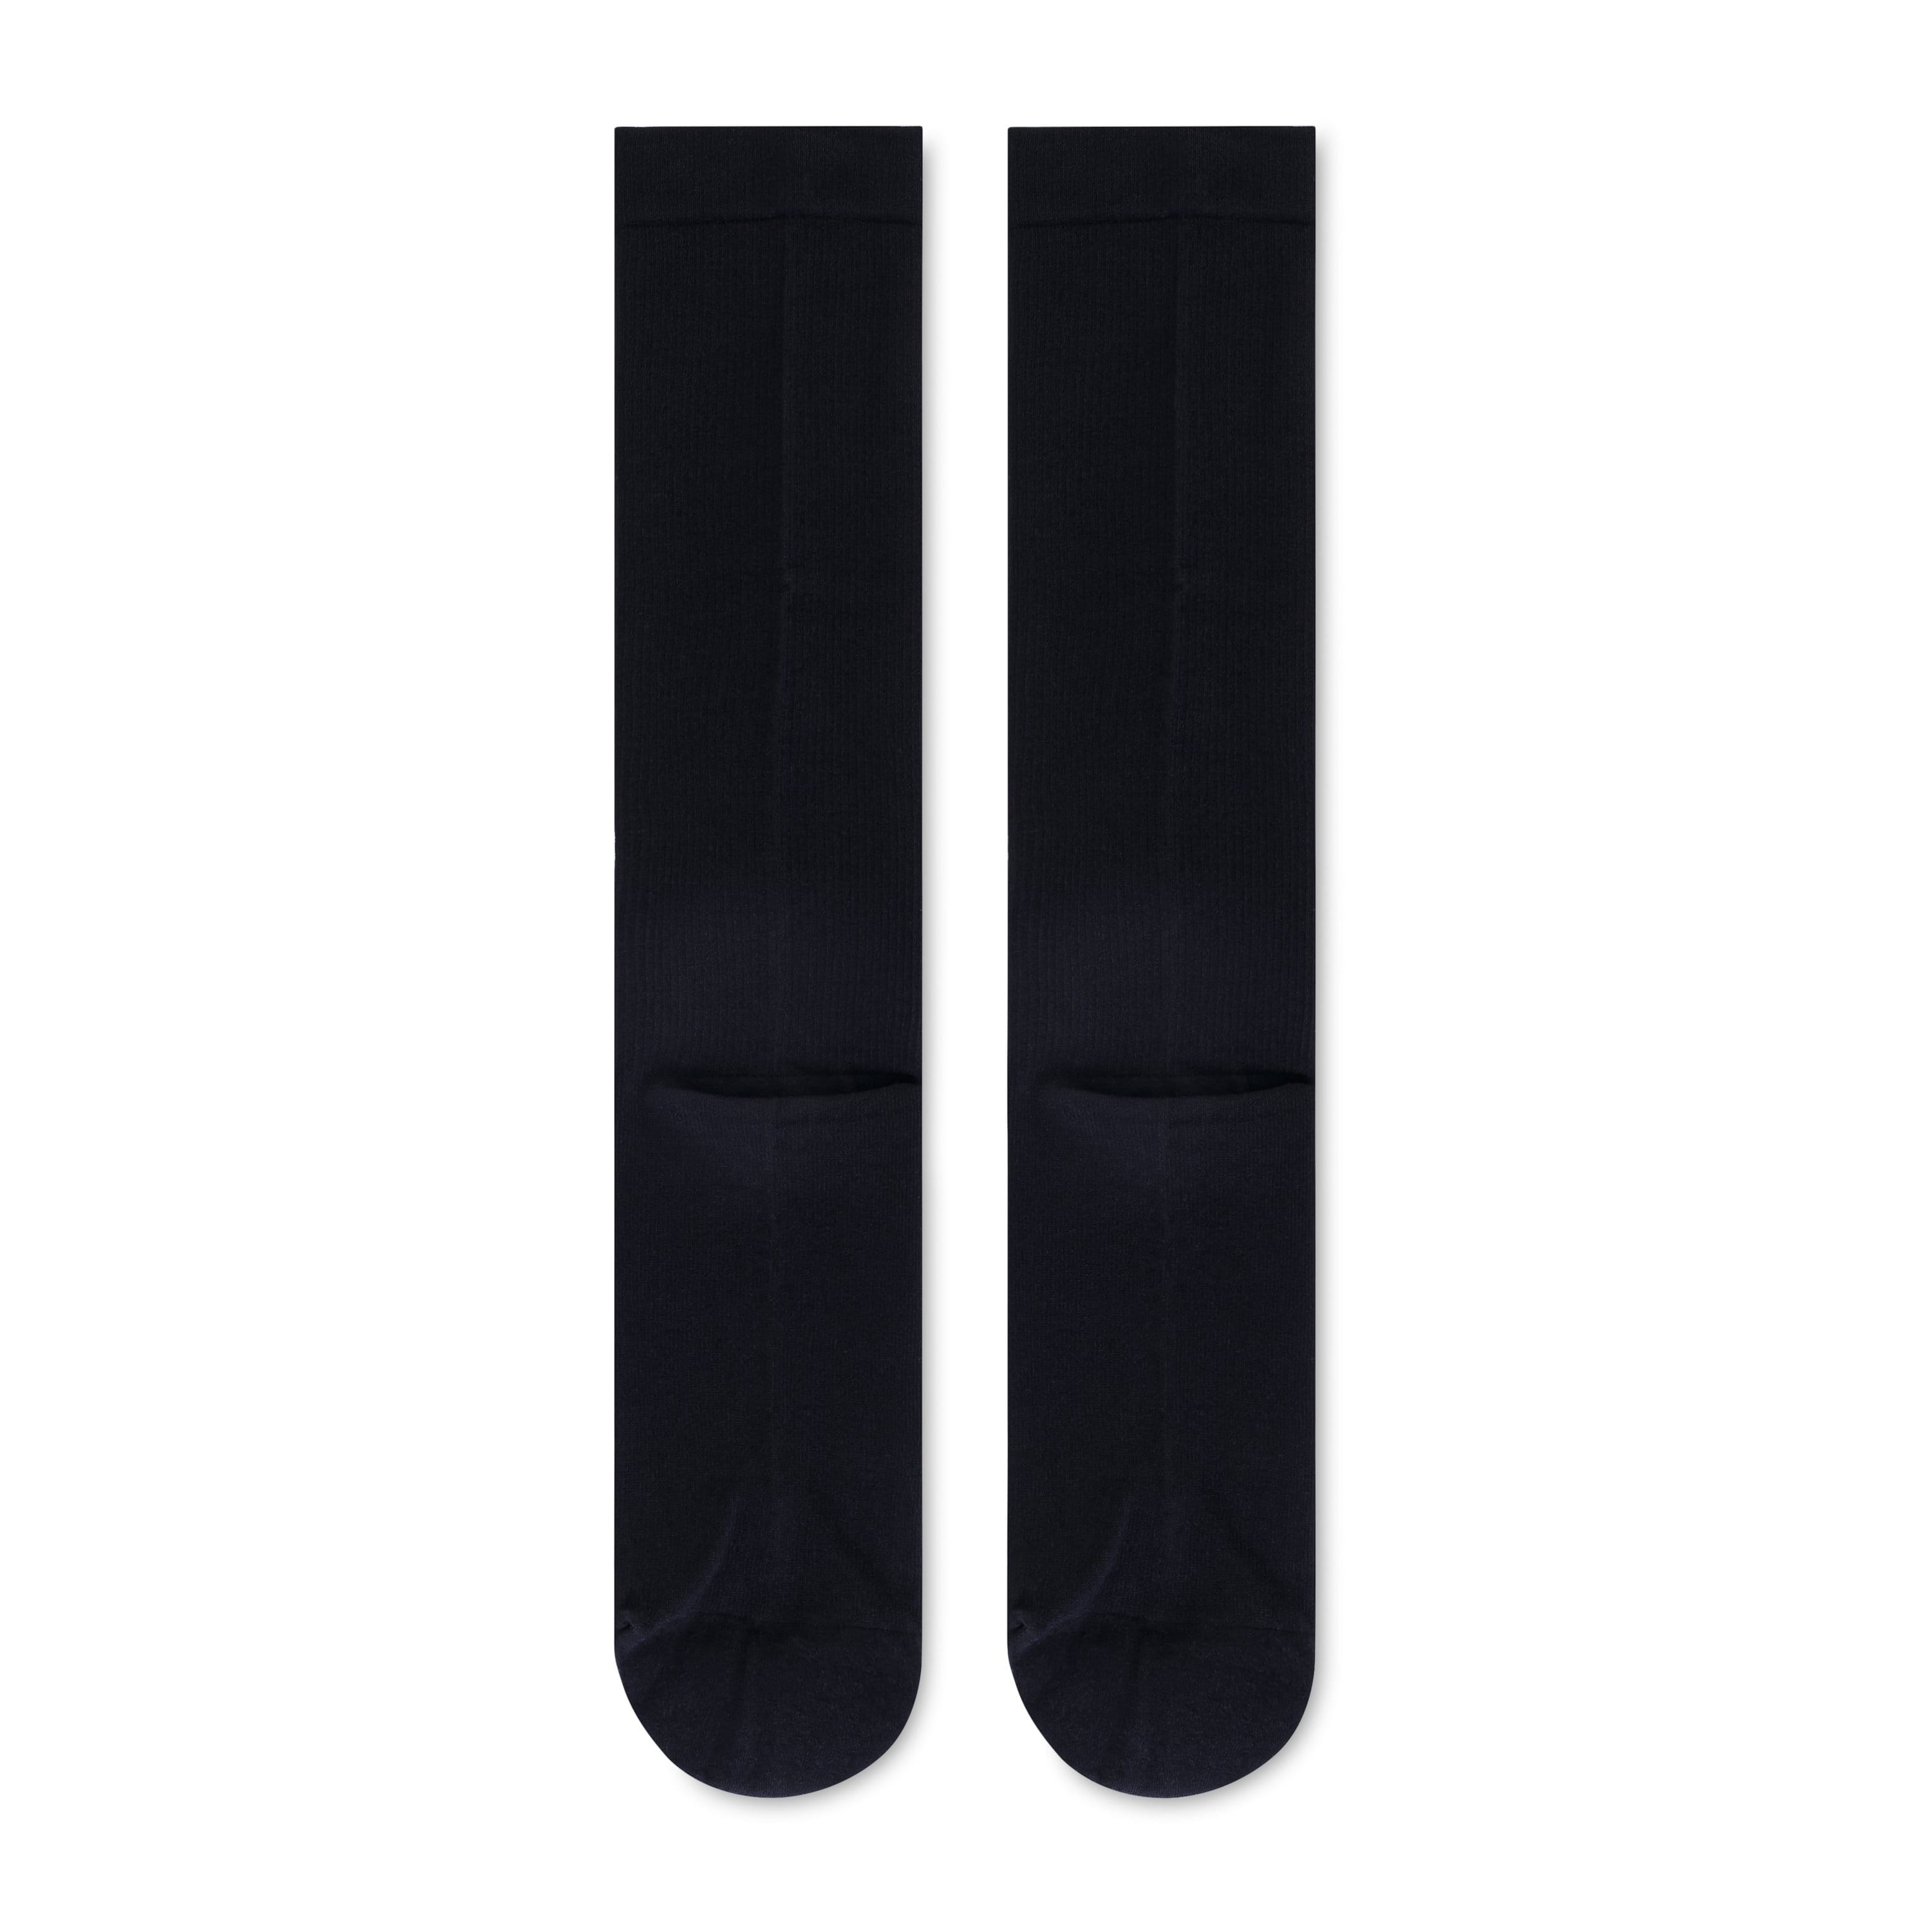 Poppy Scrubs Socks 🎁 Free Gift - Premium Black Socks